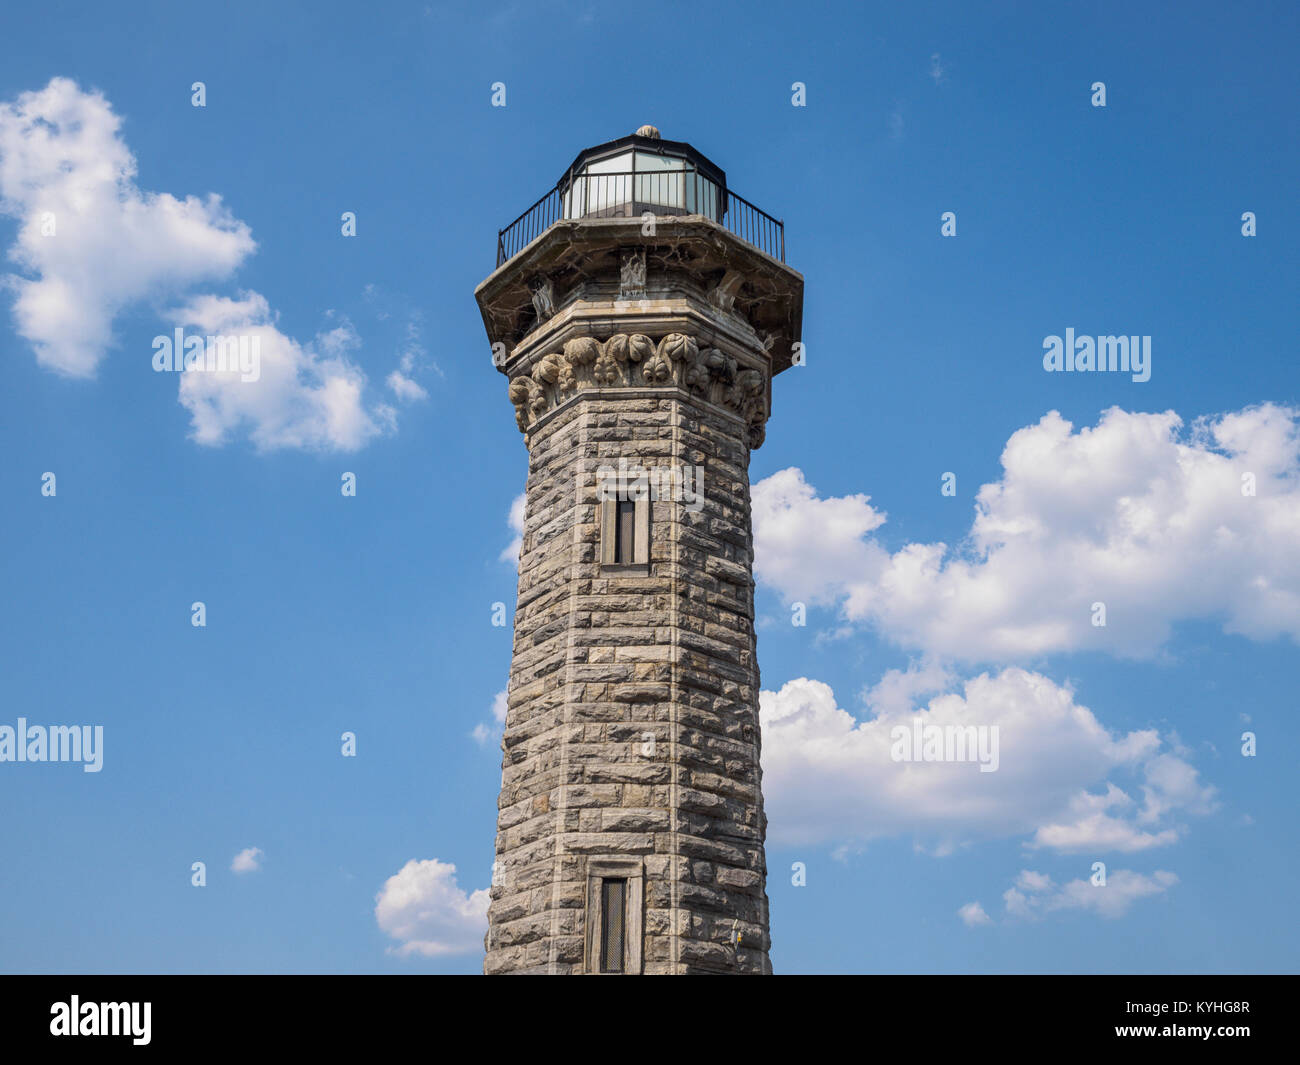 Roosevelt Island Lighthouse, New York, NY. copia uno spazio di più di questo stile gotico ottagonale di pietra Light house e ho intenzione di caricare più. Foto Stock